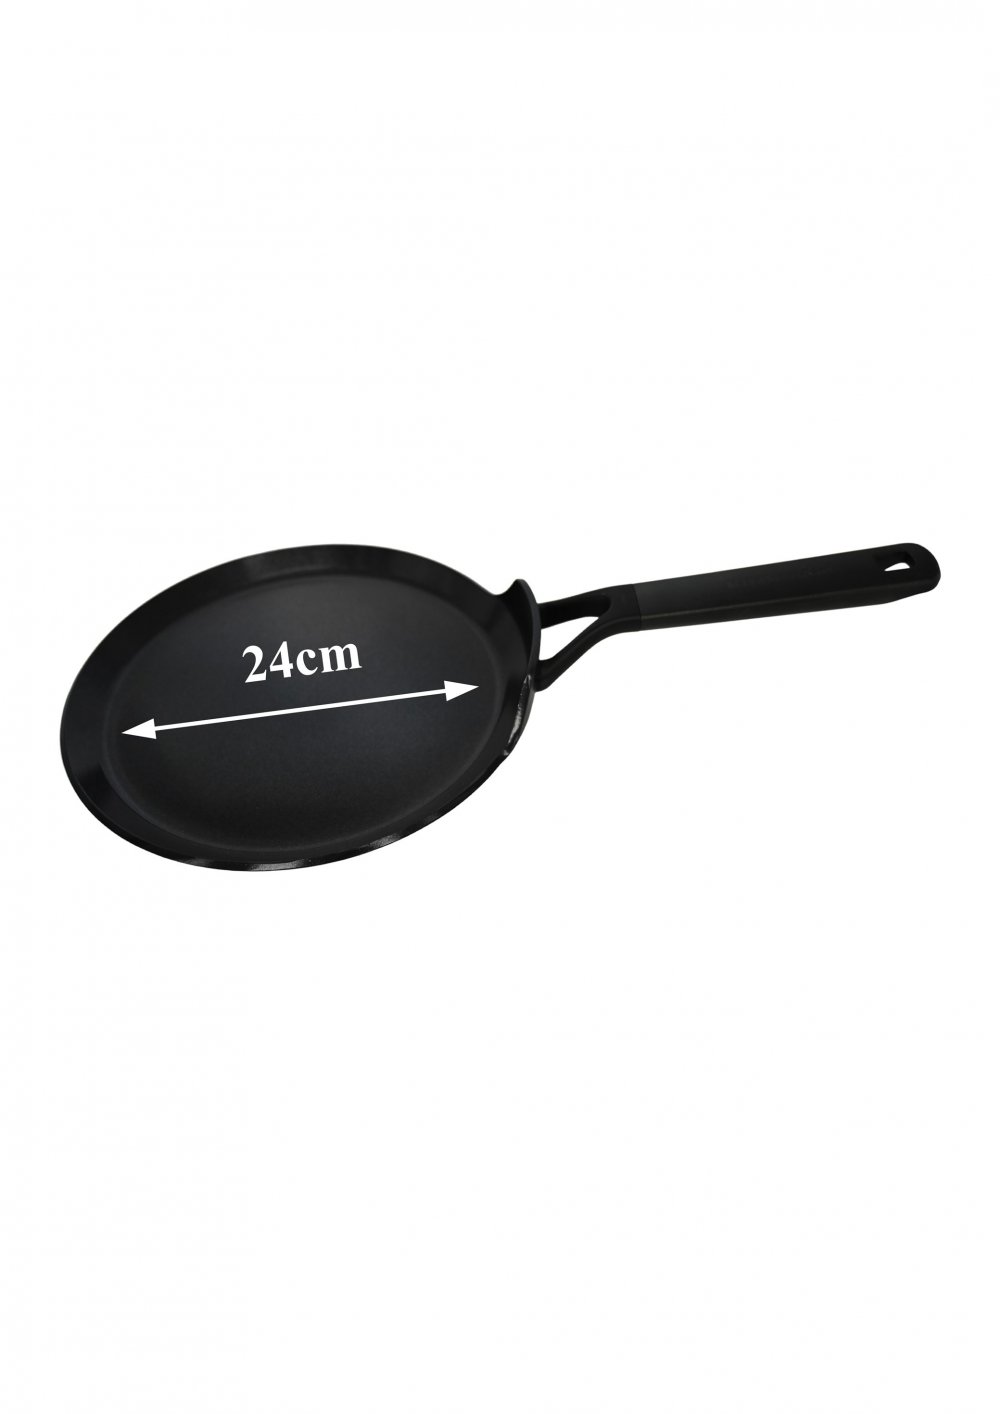 Pancake Pan 24cm Aluminium